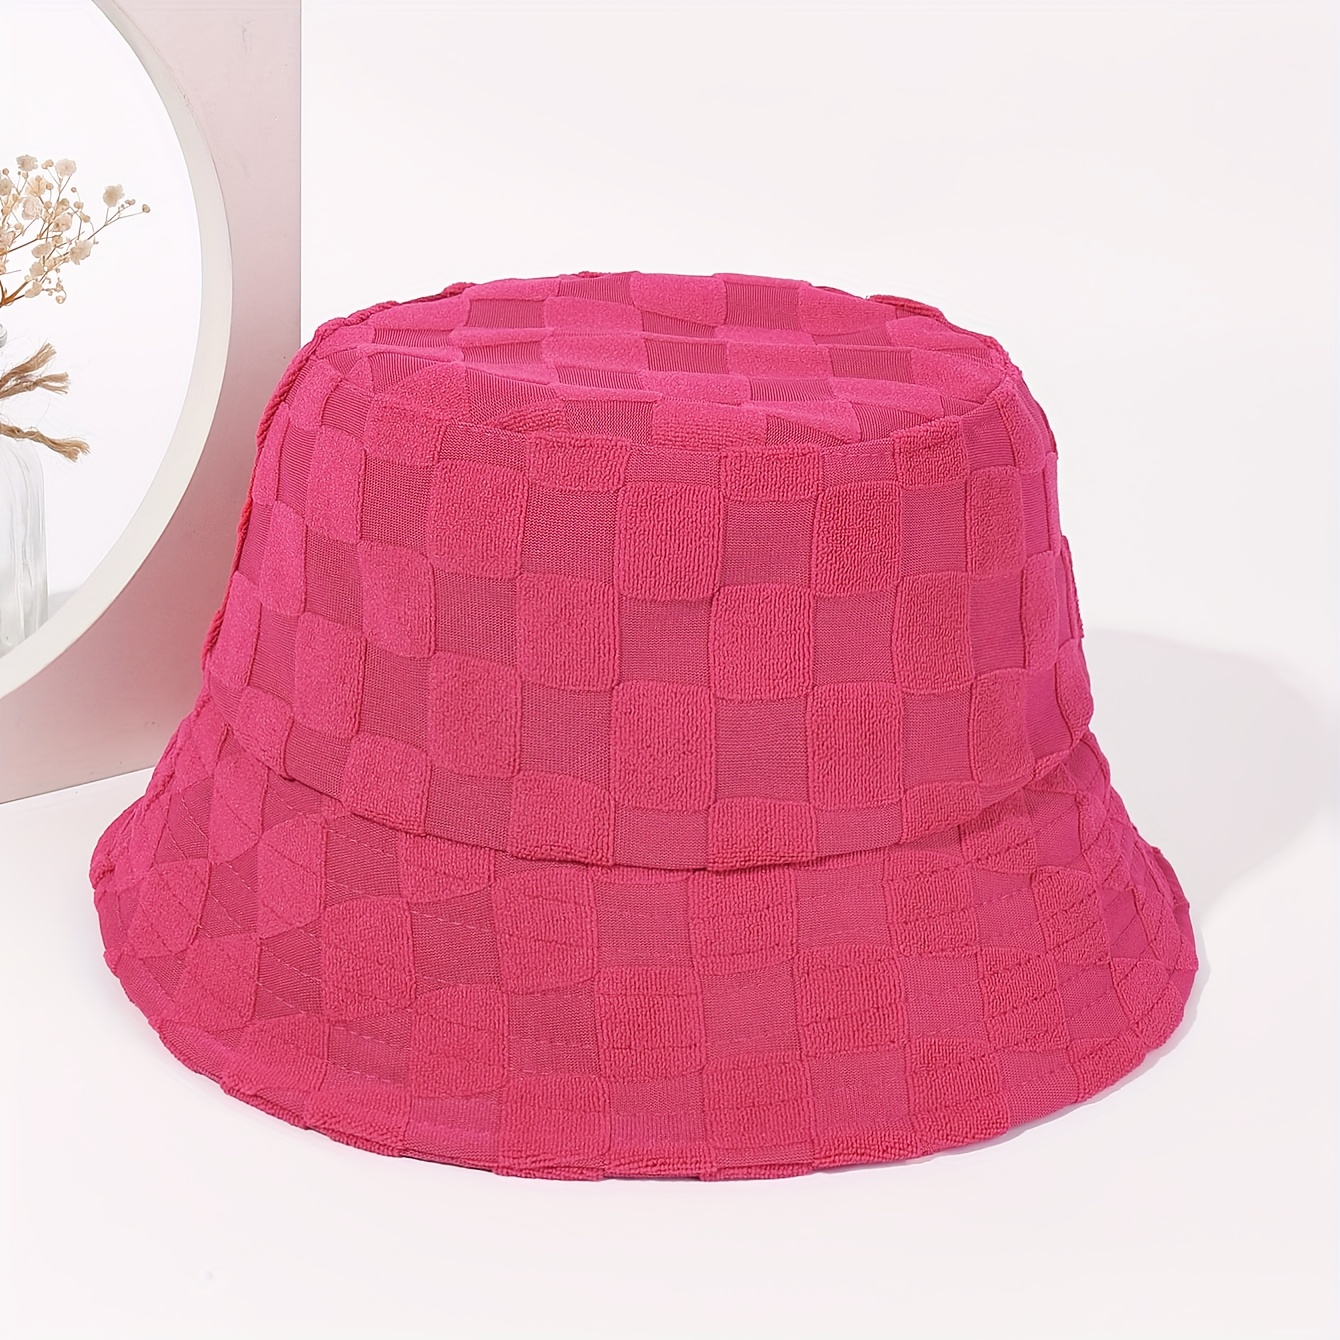 Sombrero De Pescador En Relieve A Cuadros, Color Sólido, Informal